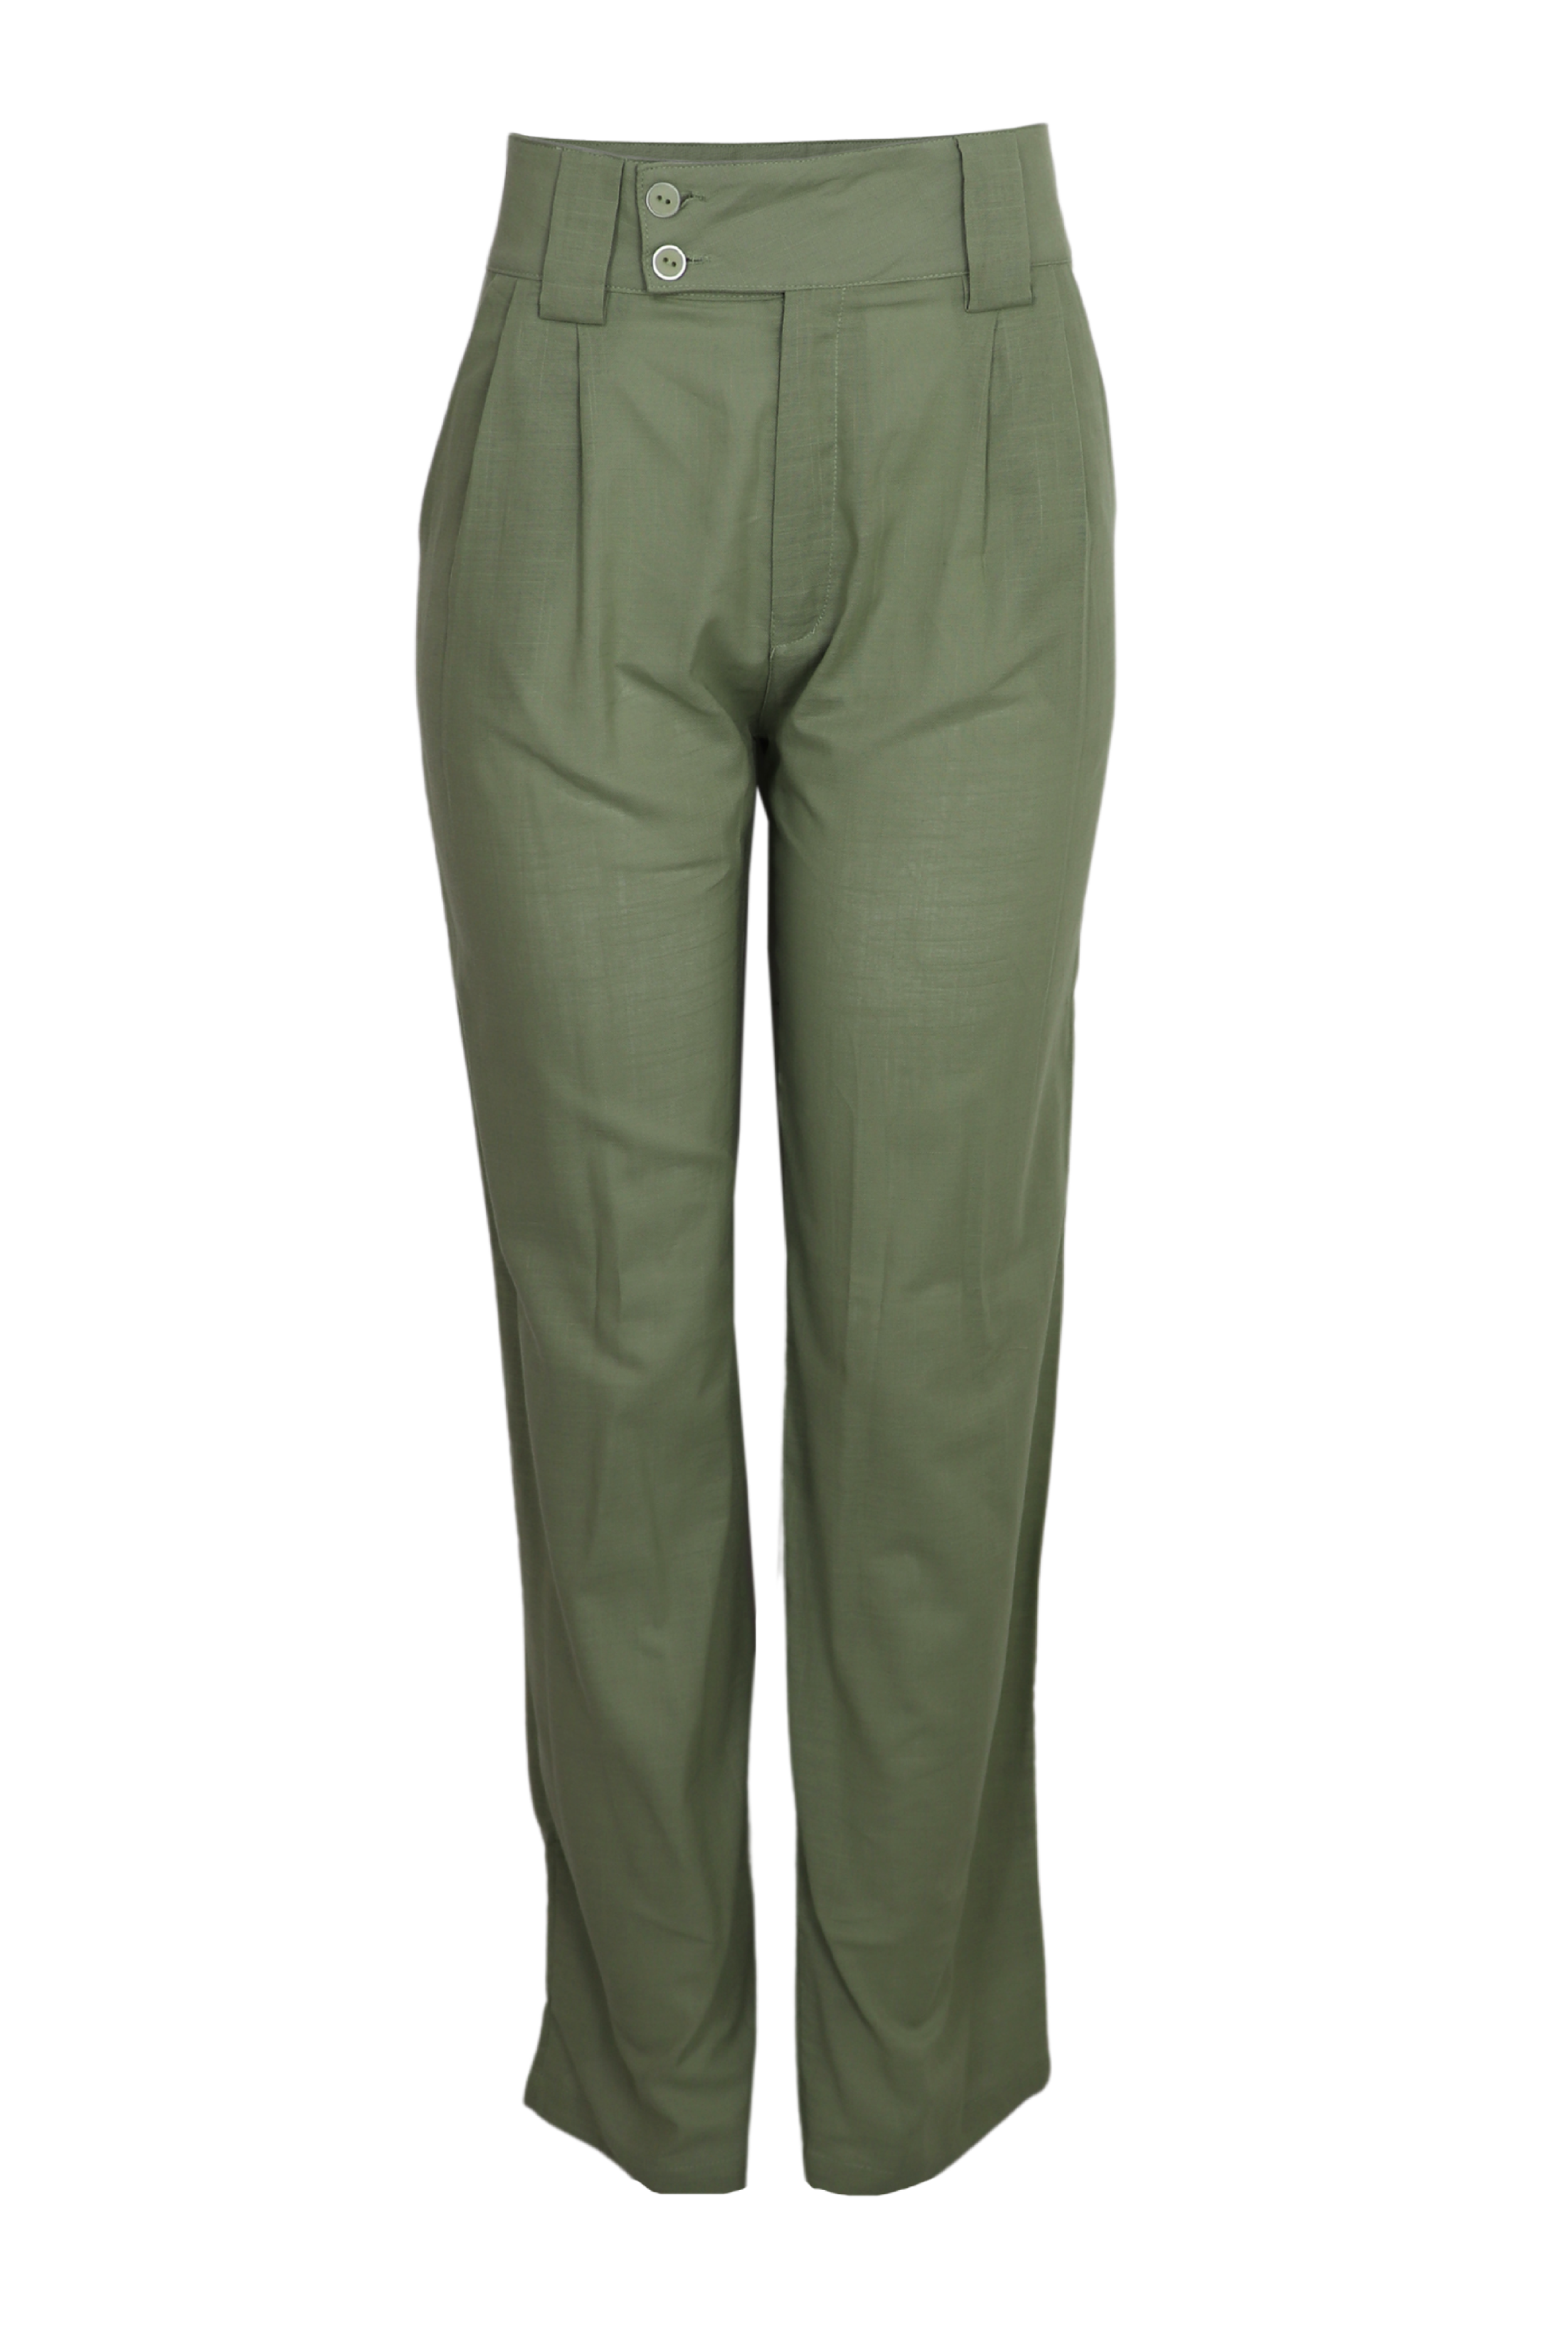 Hermoso pantalón con pretina ancha color verde